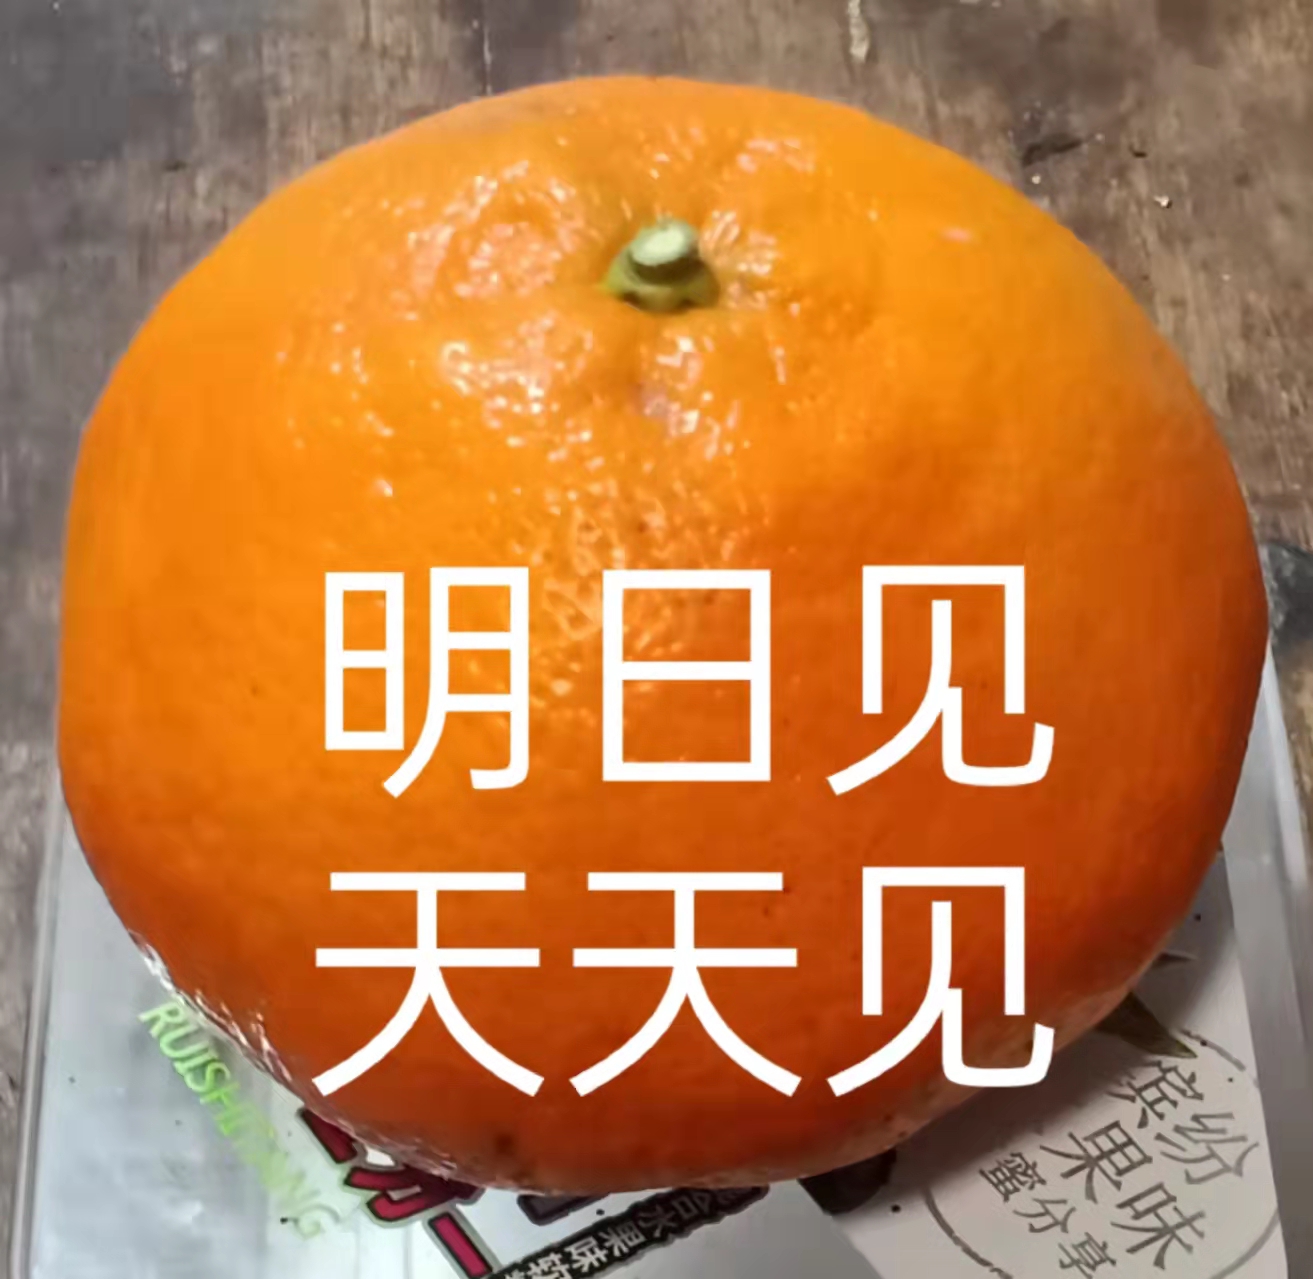 资中县明日见是明日之星柑橘口味香甜细嫩化渣果汁丰富易剥皮不粘手